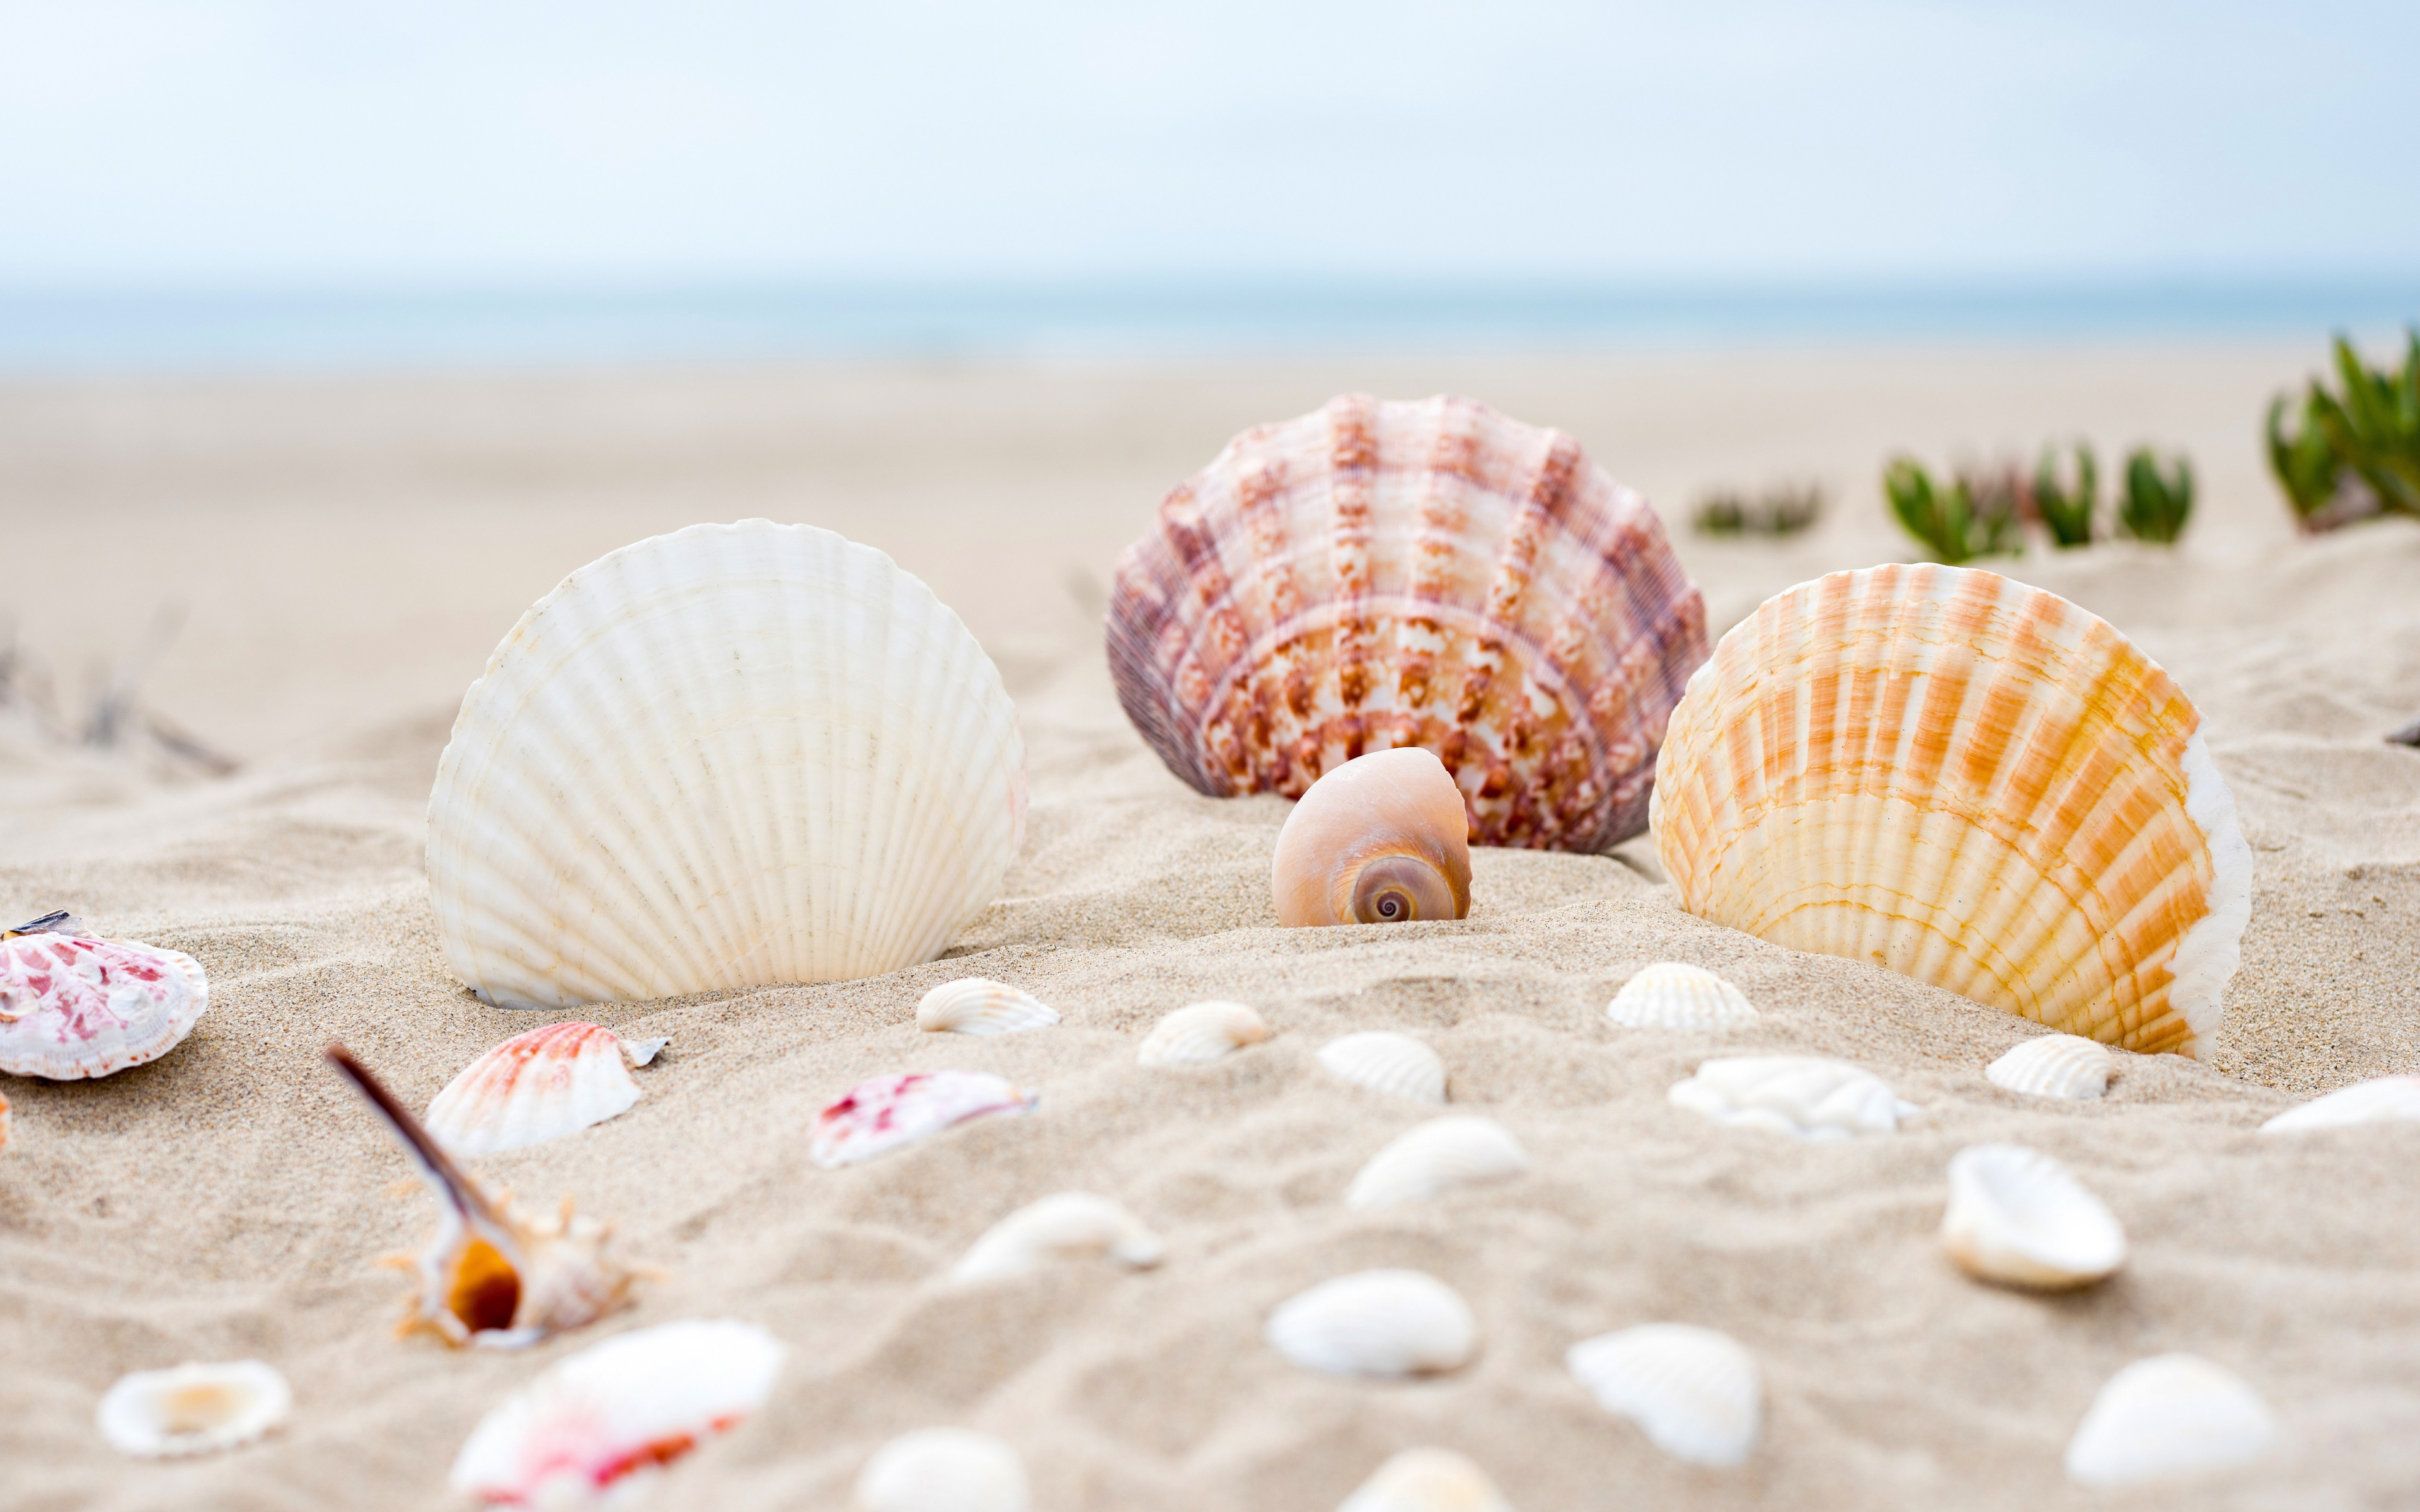 Shells on the ocean beach wallpaper 3840x2400